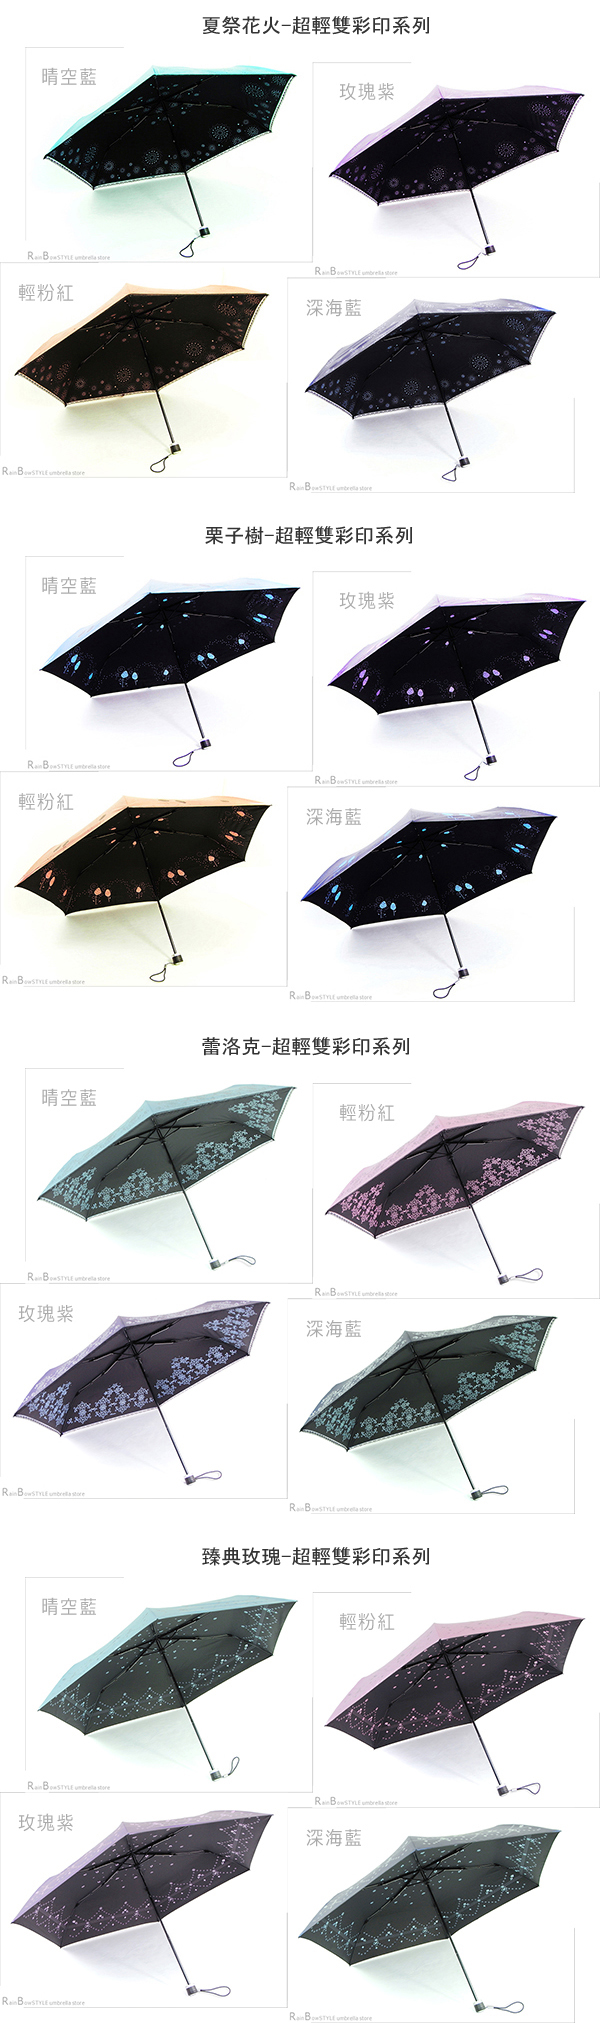 【RainSky】蕾洛克-碳纖超輕抗UV傘/ 傘 雨傘 UV傘 折疊傘 自動傘 洋傘 陽傘 大傘 抗UV 防風 潑水 1